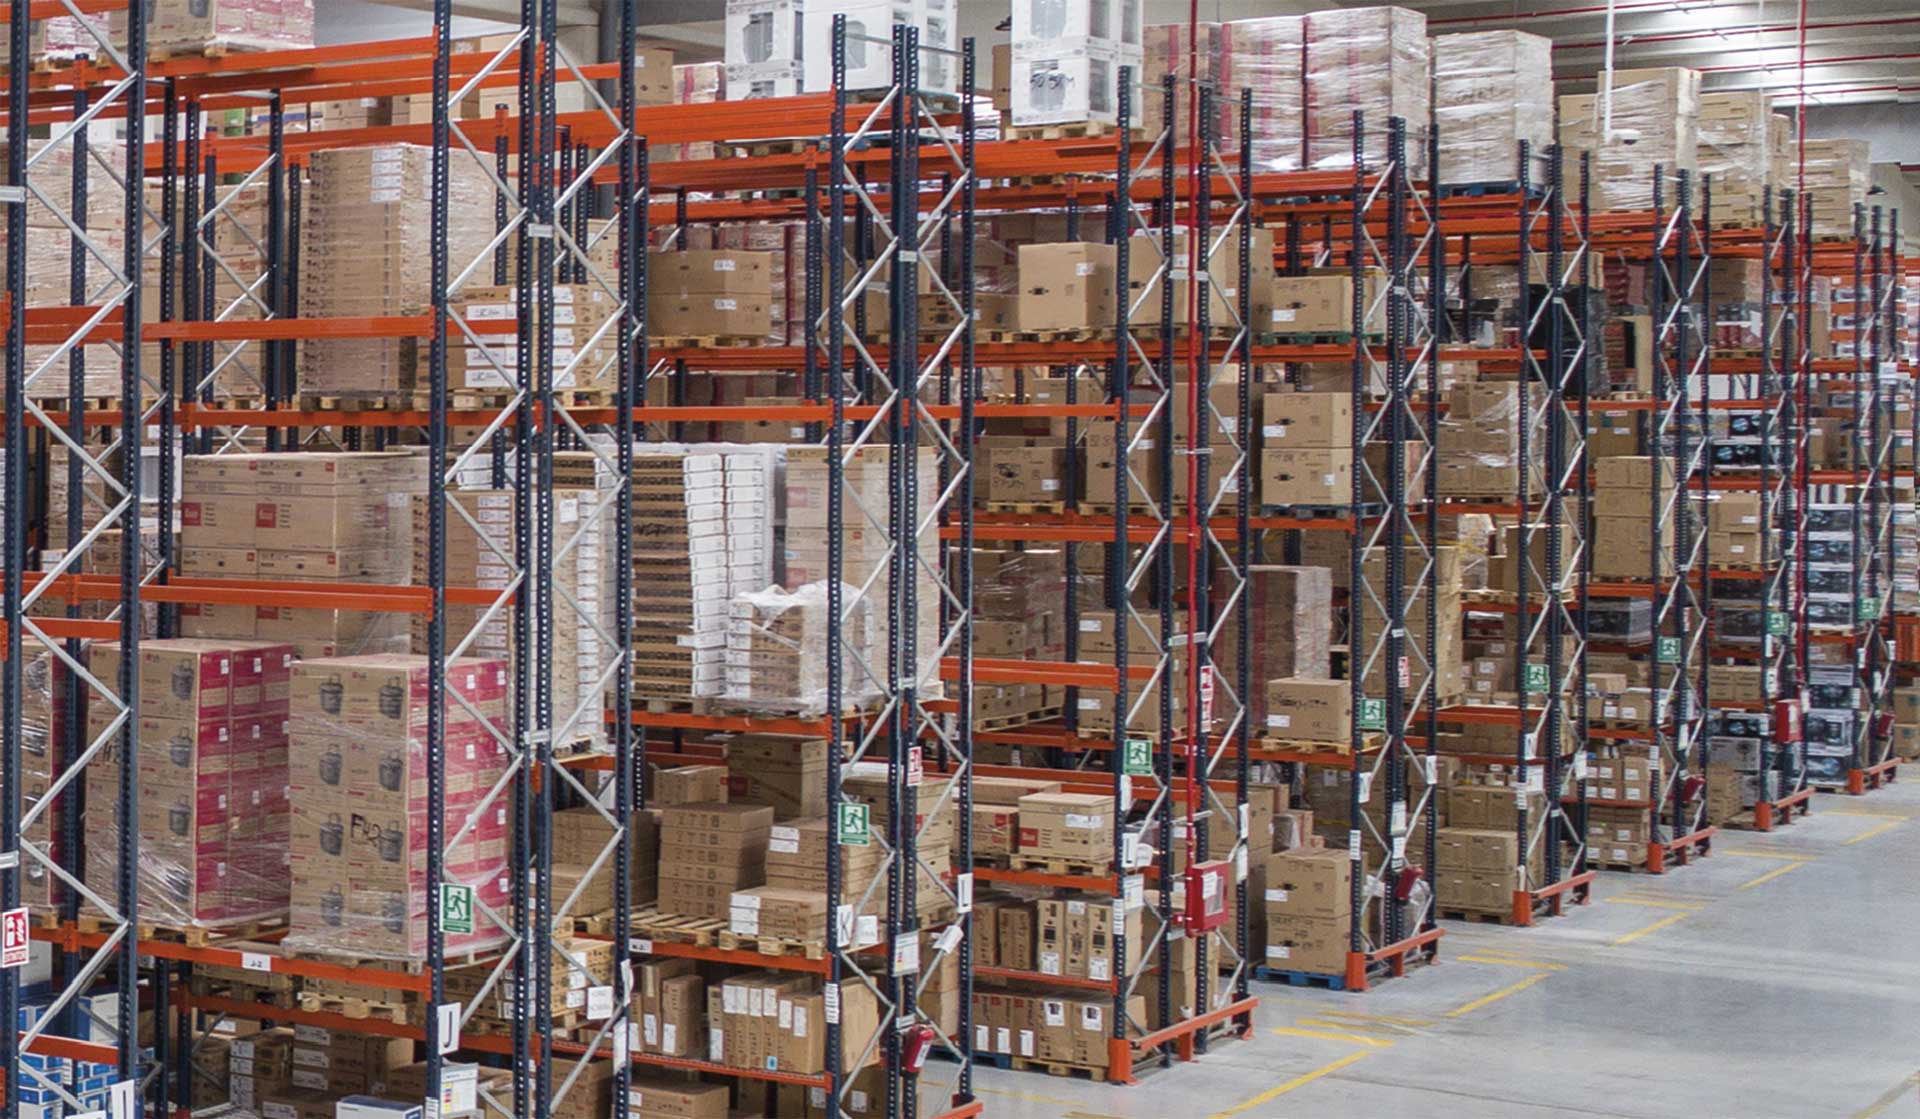 Die häufigsten Logistikprobleme zu erkennen, die in einem Lager auftreten können, ist für eine effiziente Lieferkette von grundlegender Bedeutung